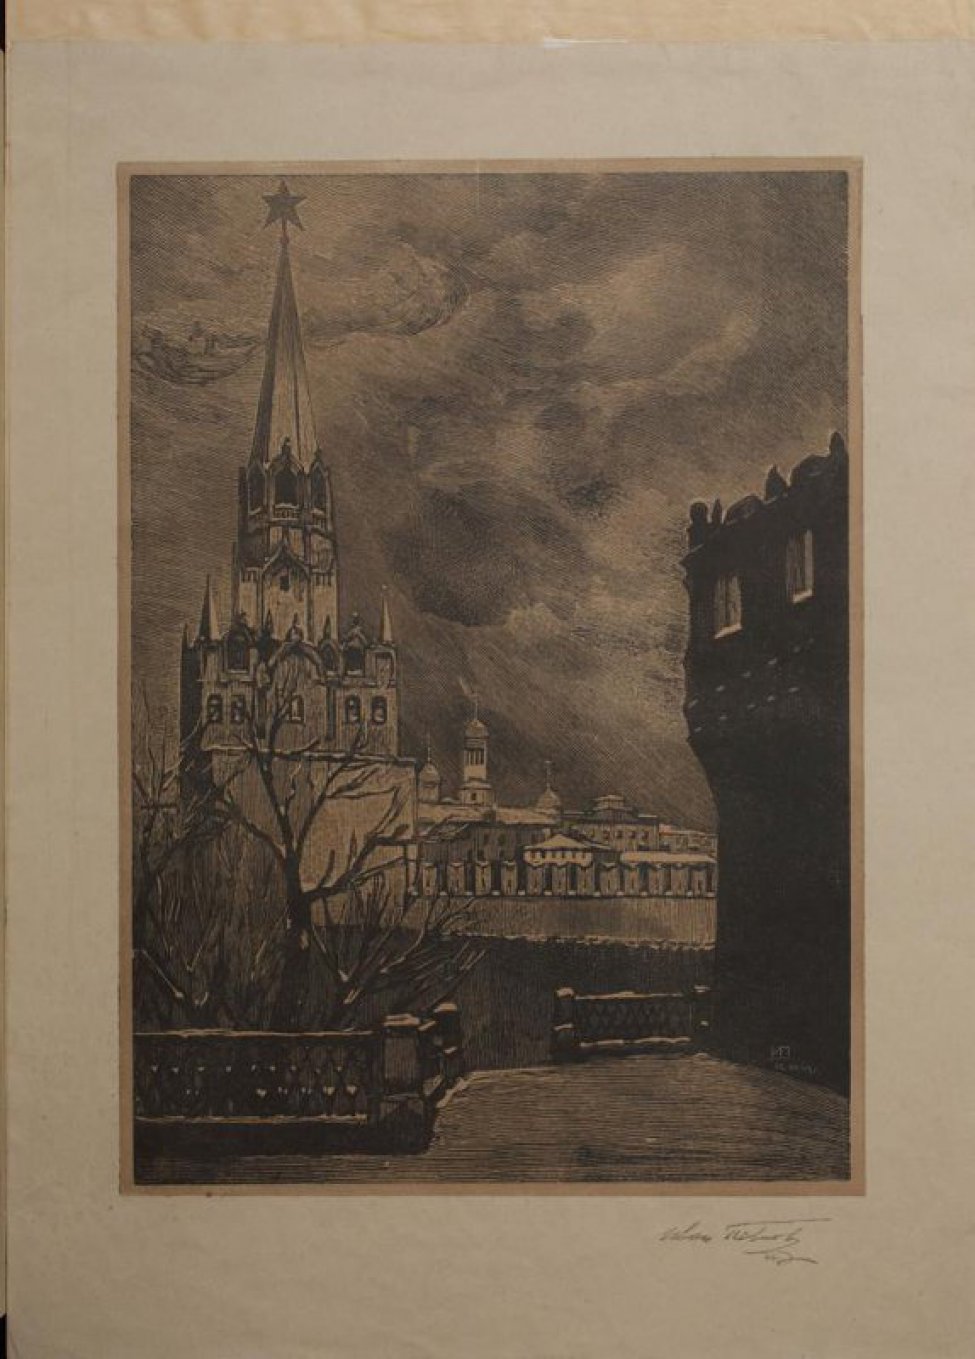 Слева изображена кремлевская башня с шатровым  перекрытием, увенчанным пятиконечной звездой. Справа от нее зубчатые стены. За ними постройки. Справа на гравюре :" ИП 22.ХП-43"г.